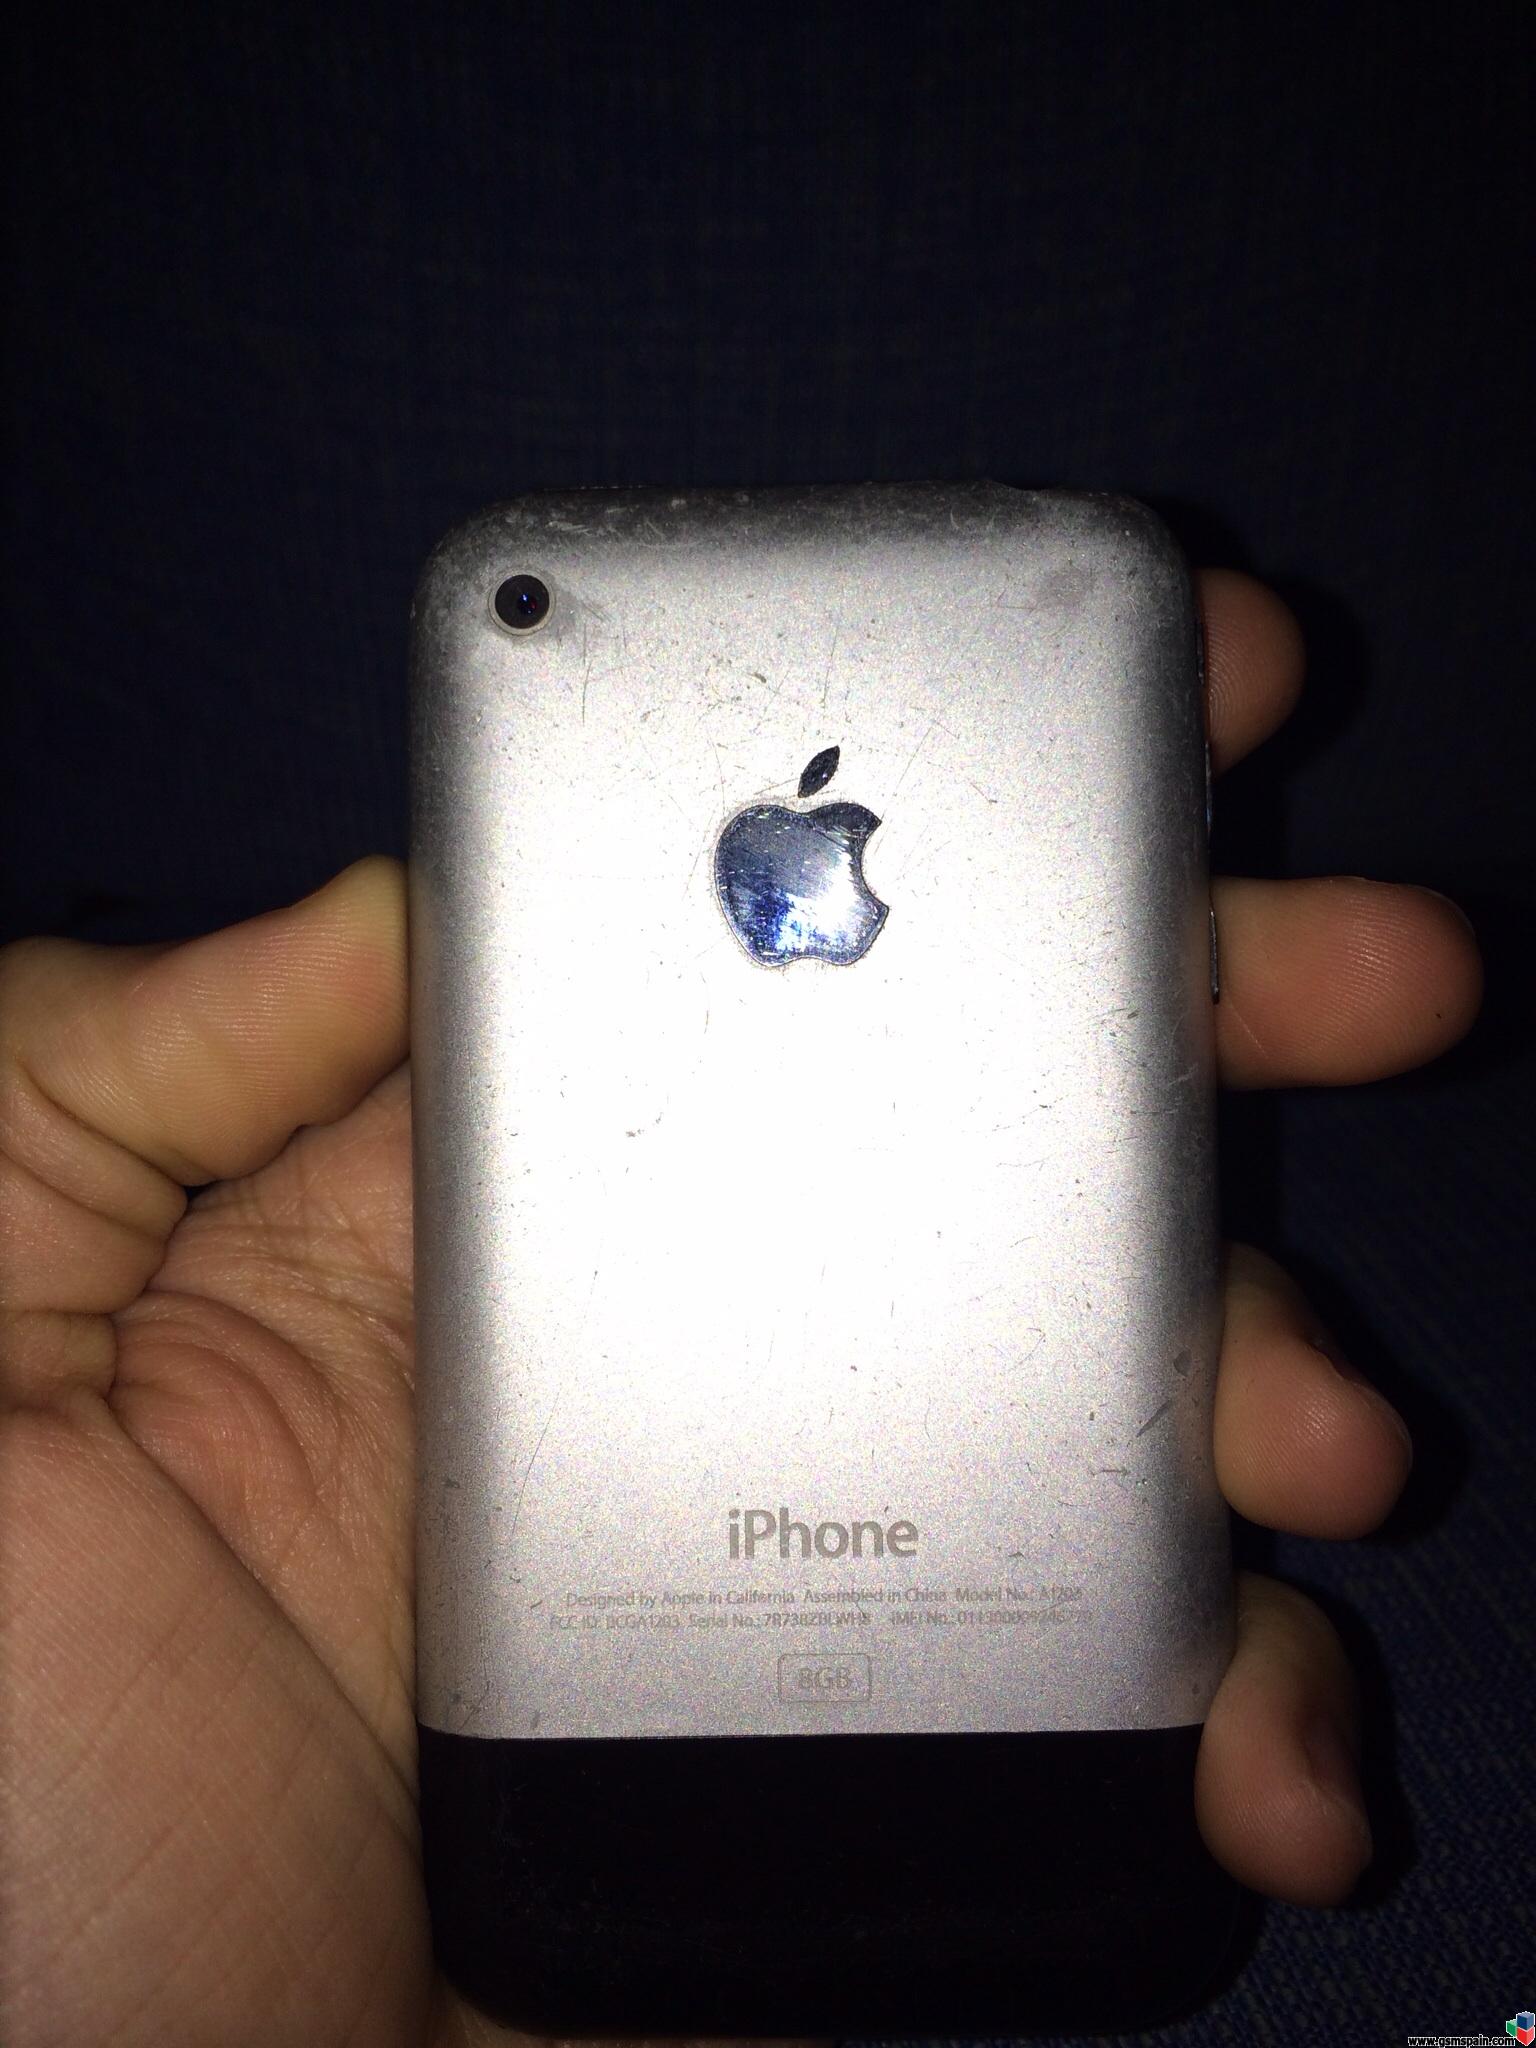 [VENDO] iPhone 2G, el primero. Deteriorado pero FUNCIONANDO!. Informacin en el interior!